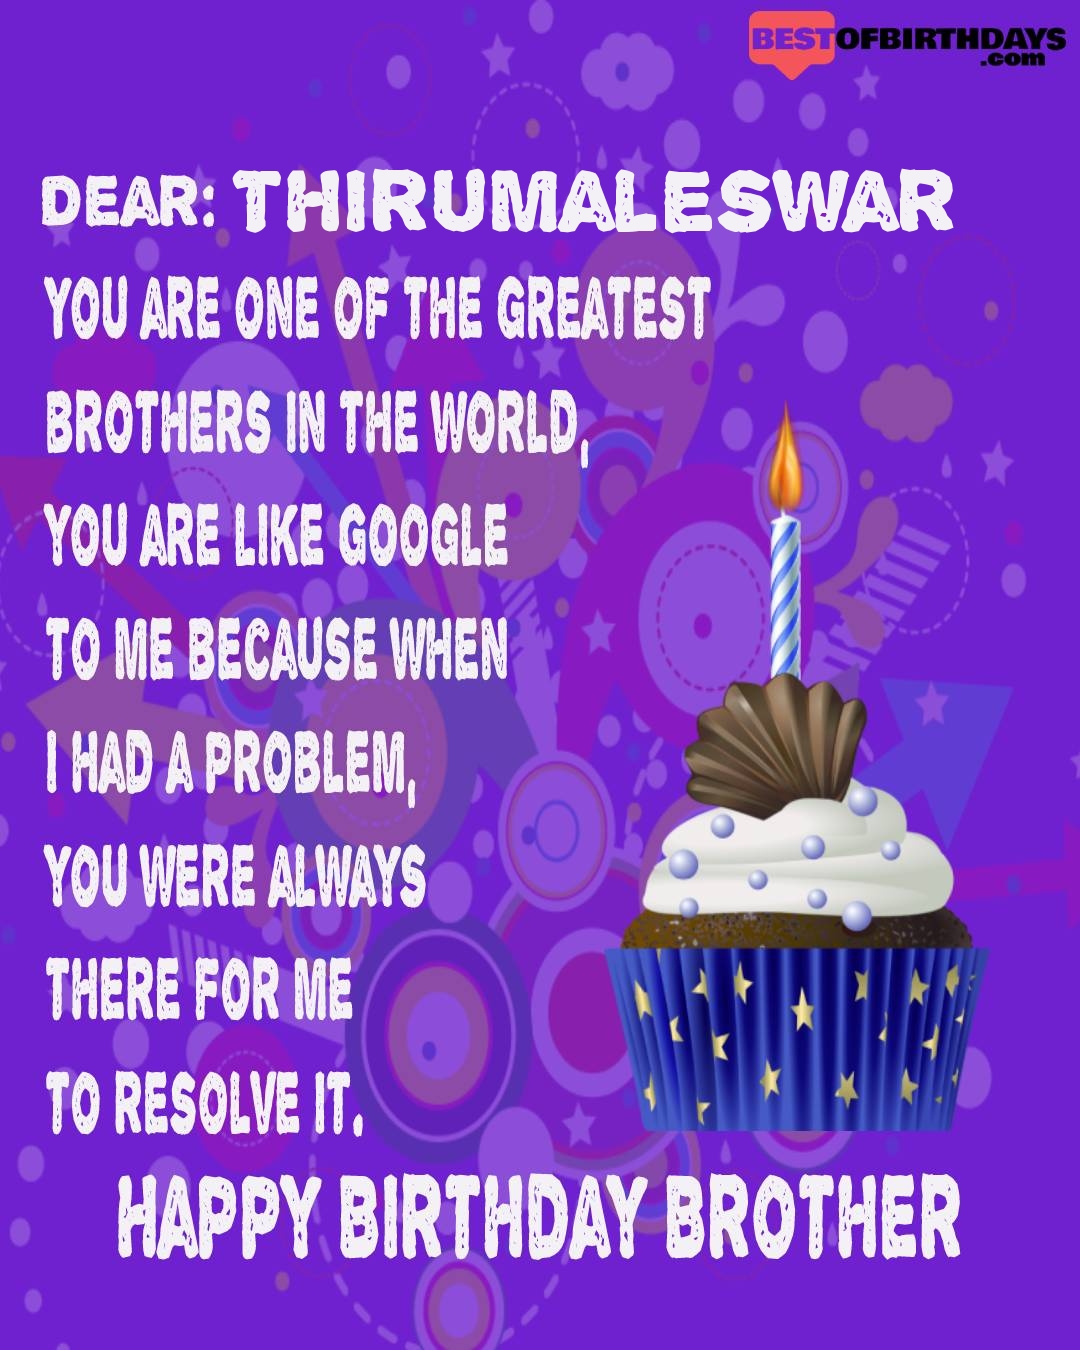 Happy birthday thirumaleswar bhai brother bro